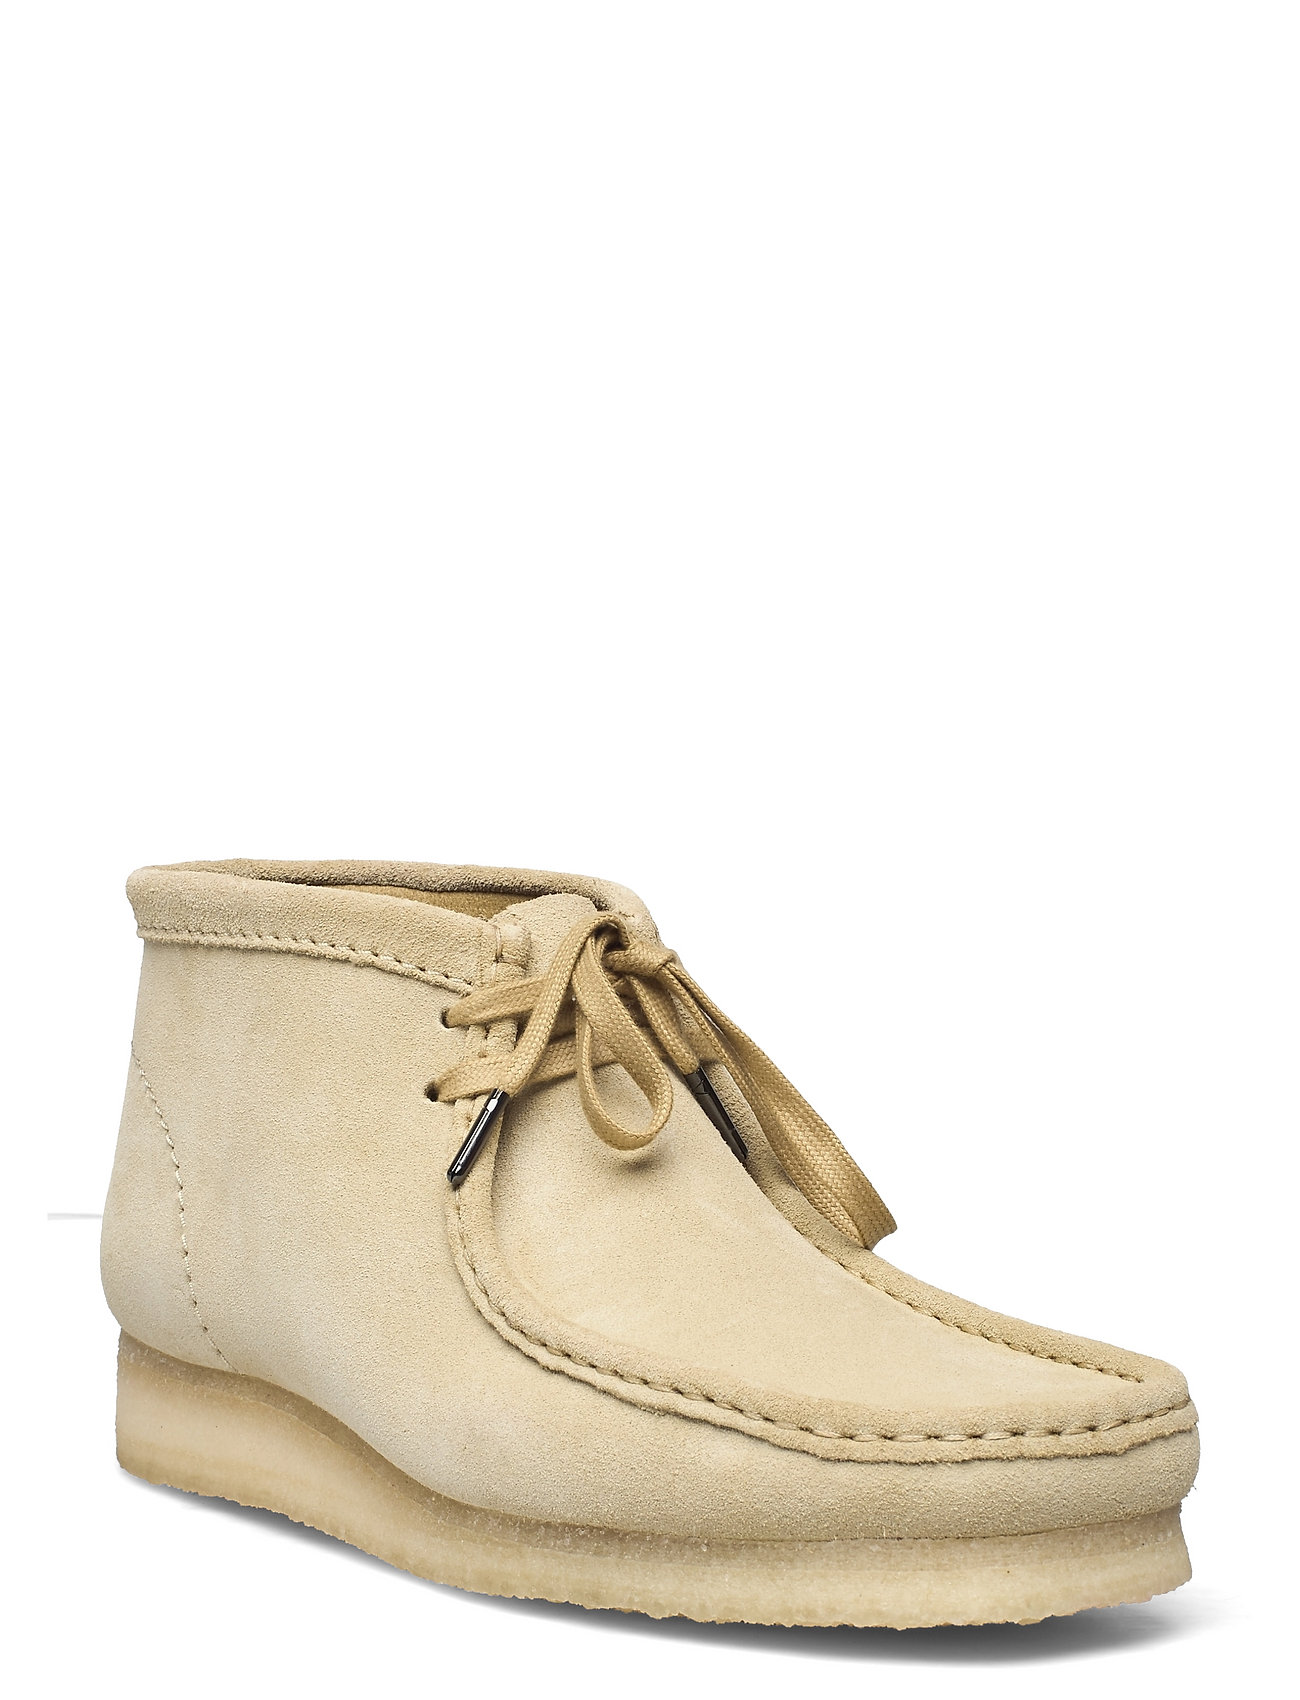 Clarks Originals Boot Maple Suede - Desert boots